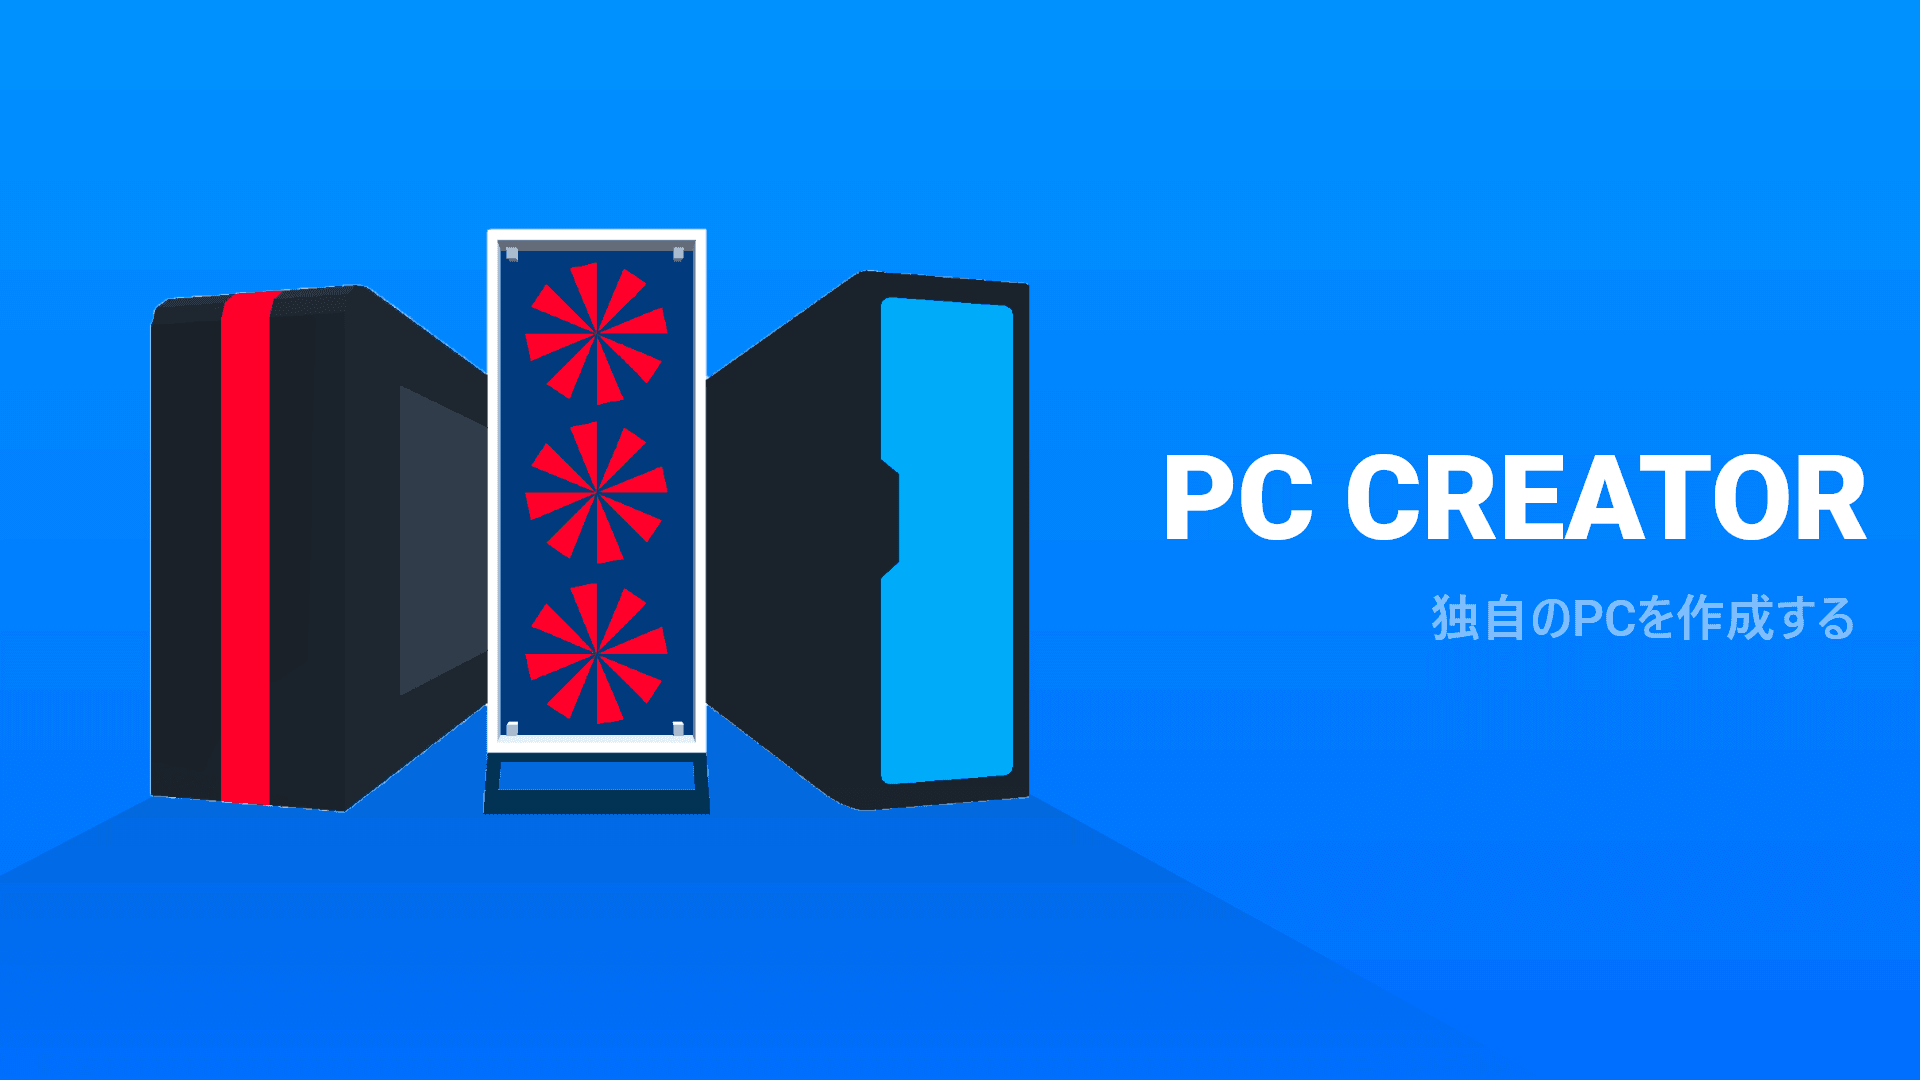 PC Creator - PCビルディング・シミュレータのキャプチャ